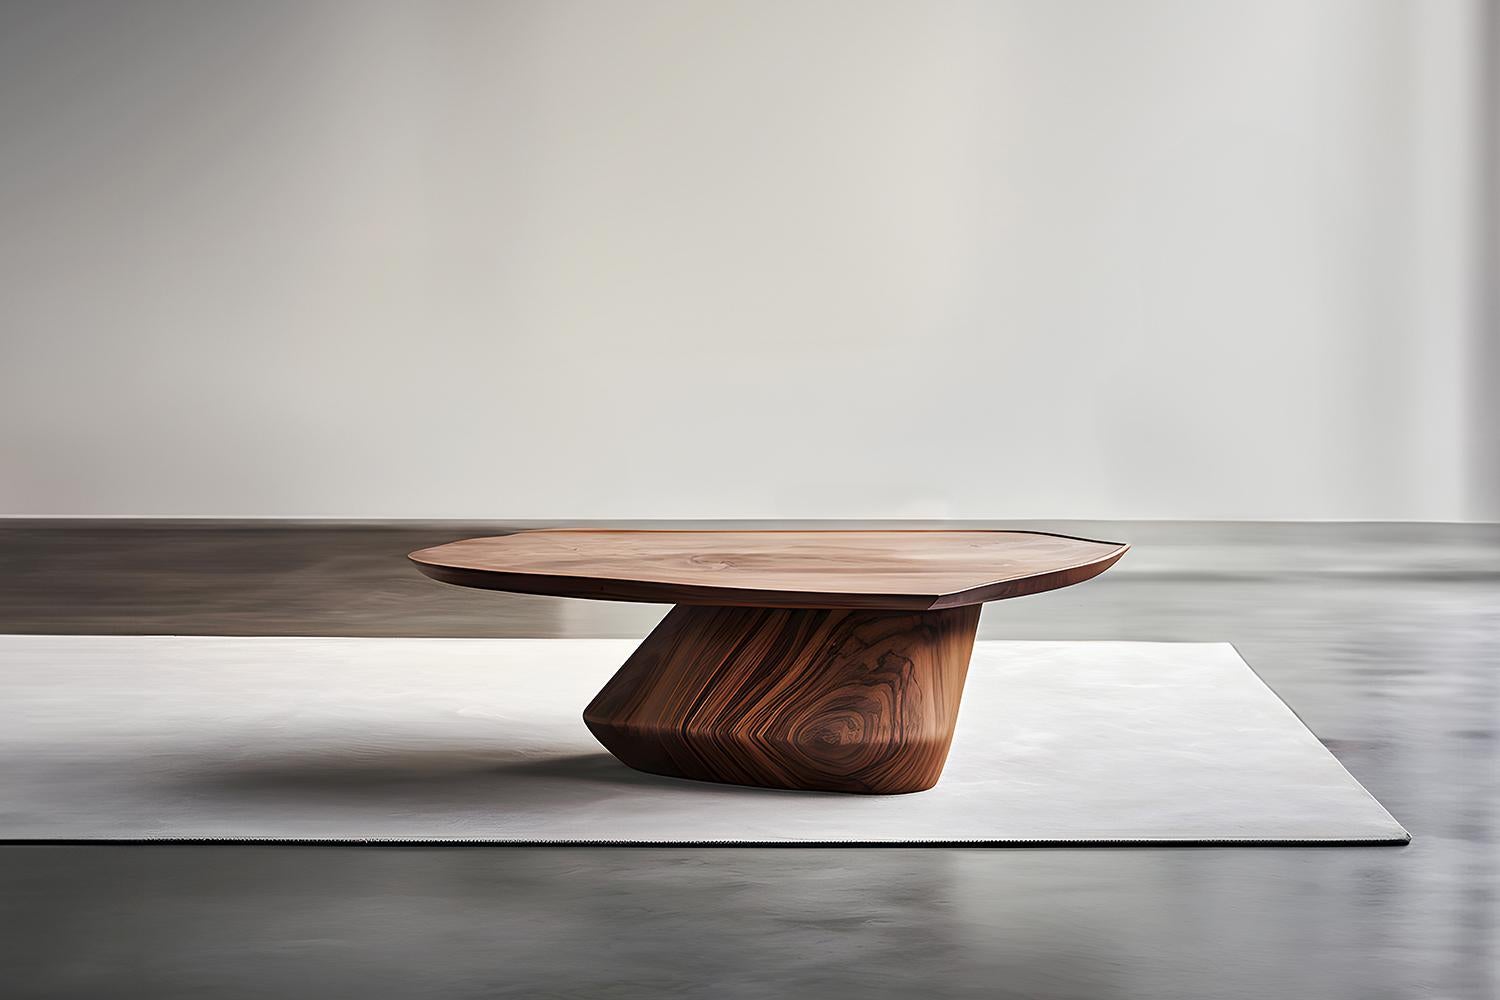 Skulpturaler Couchtisch aus Massivholz, Center Table Solace S32 von Joel Escalona


Die Tischserie Solace, entworfen von Joel Escalona, ist eine Möbelkollektion, die dank ihrer sinnlichen, dichten und unregelmäßigen Formen Ausgewogenheit und Präsenz